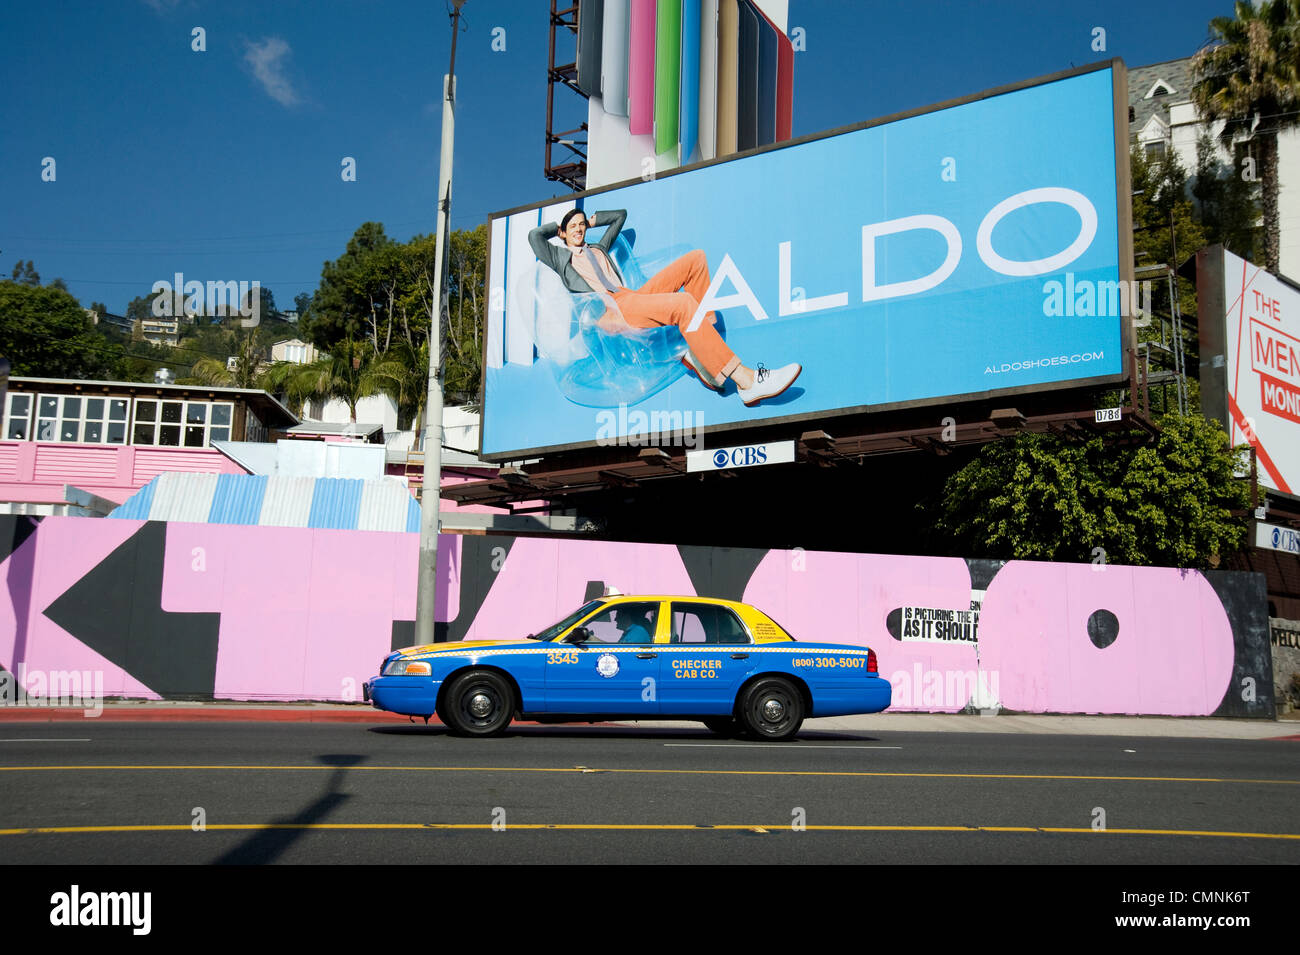 Sunset Strip en West Hollywood con taxi y vallas publicitarias para Aldo Shoes circa 2012 Foto de stock